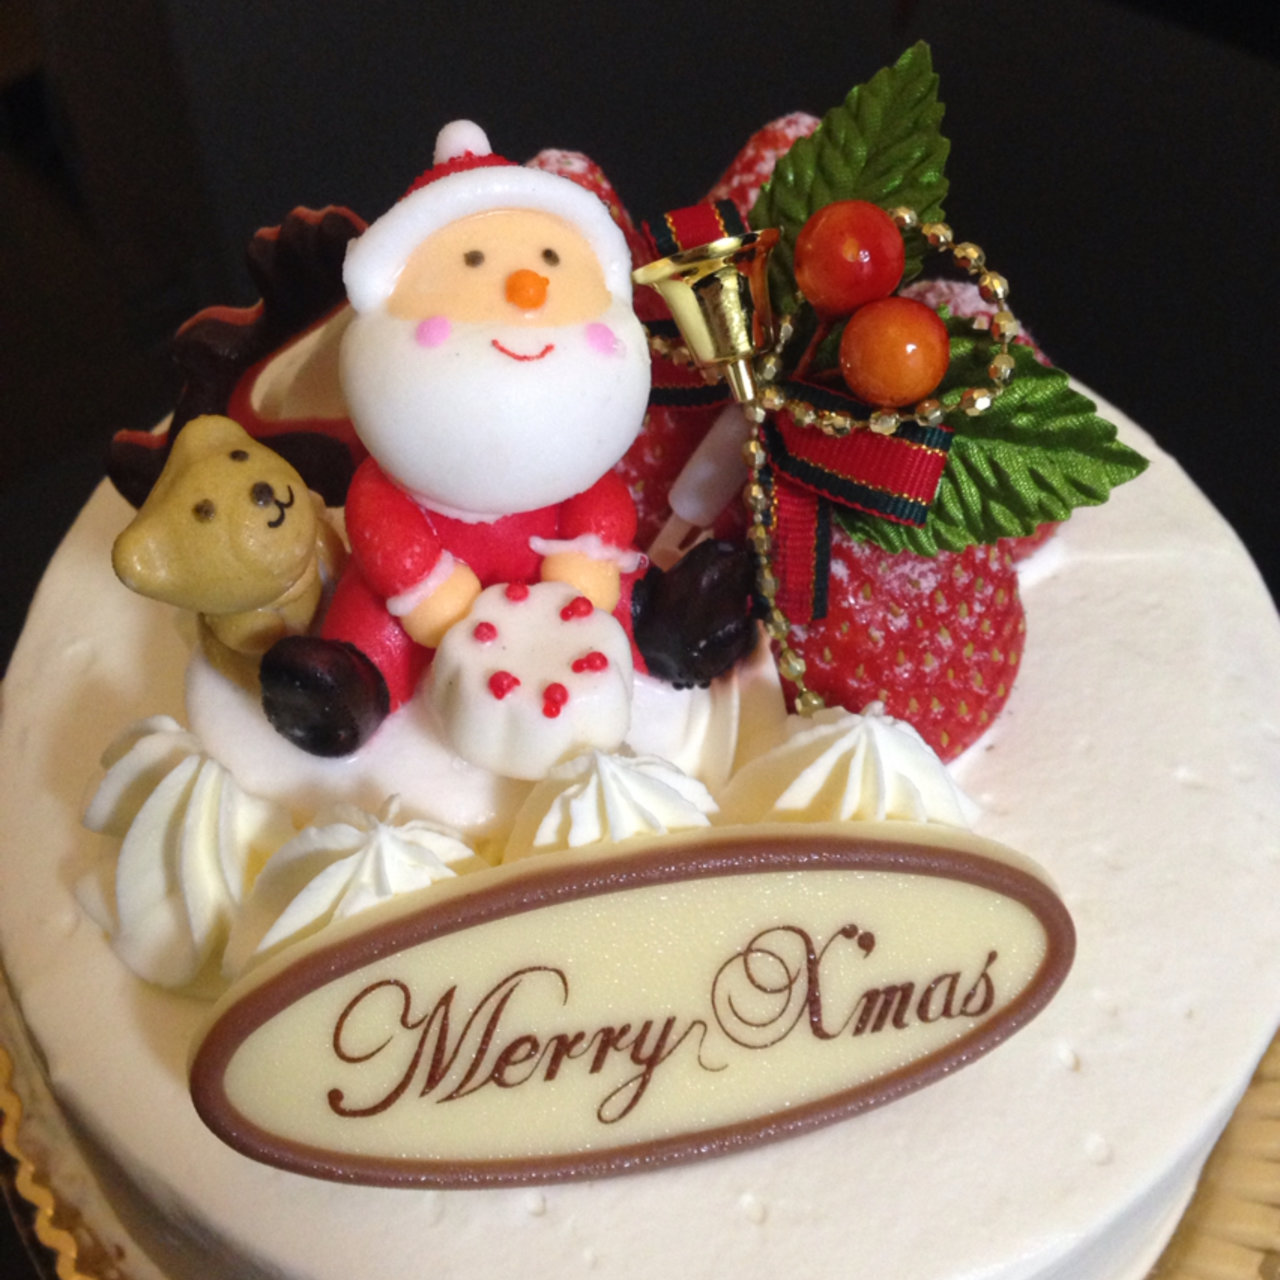 クリスマスケーキ ムッシュ マキノ 向丘本店 の口コミ一覧 おいしい一皿が集まるグルメコミュニティサービス Sarah